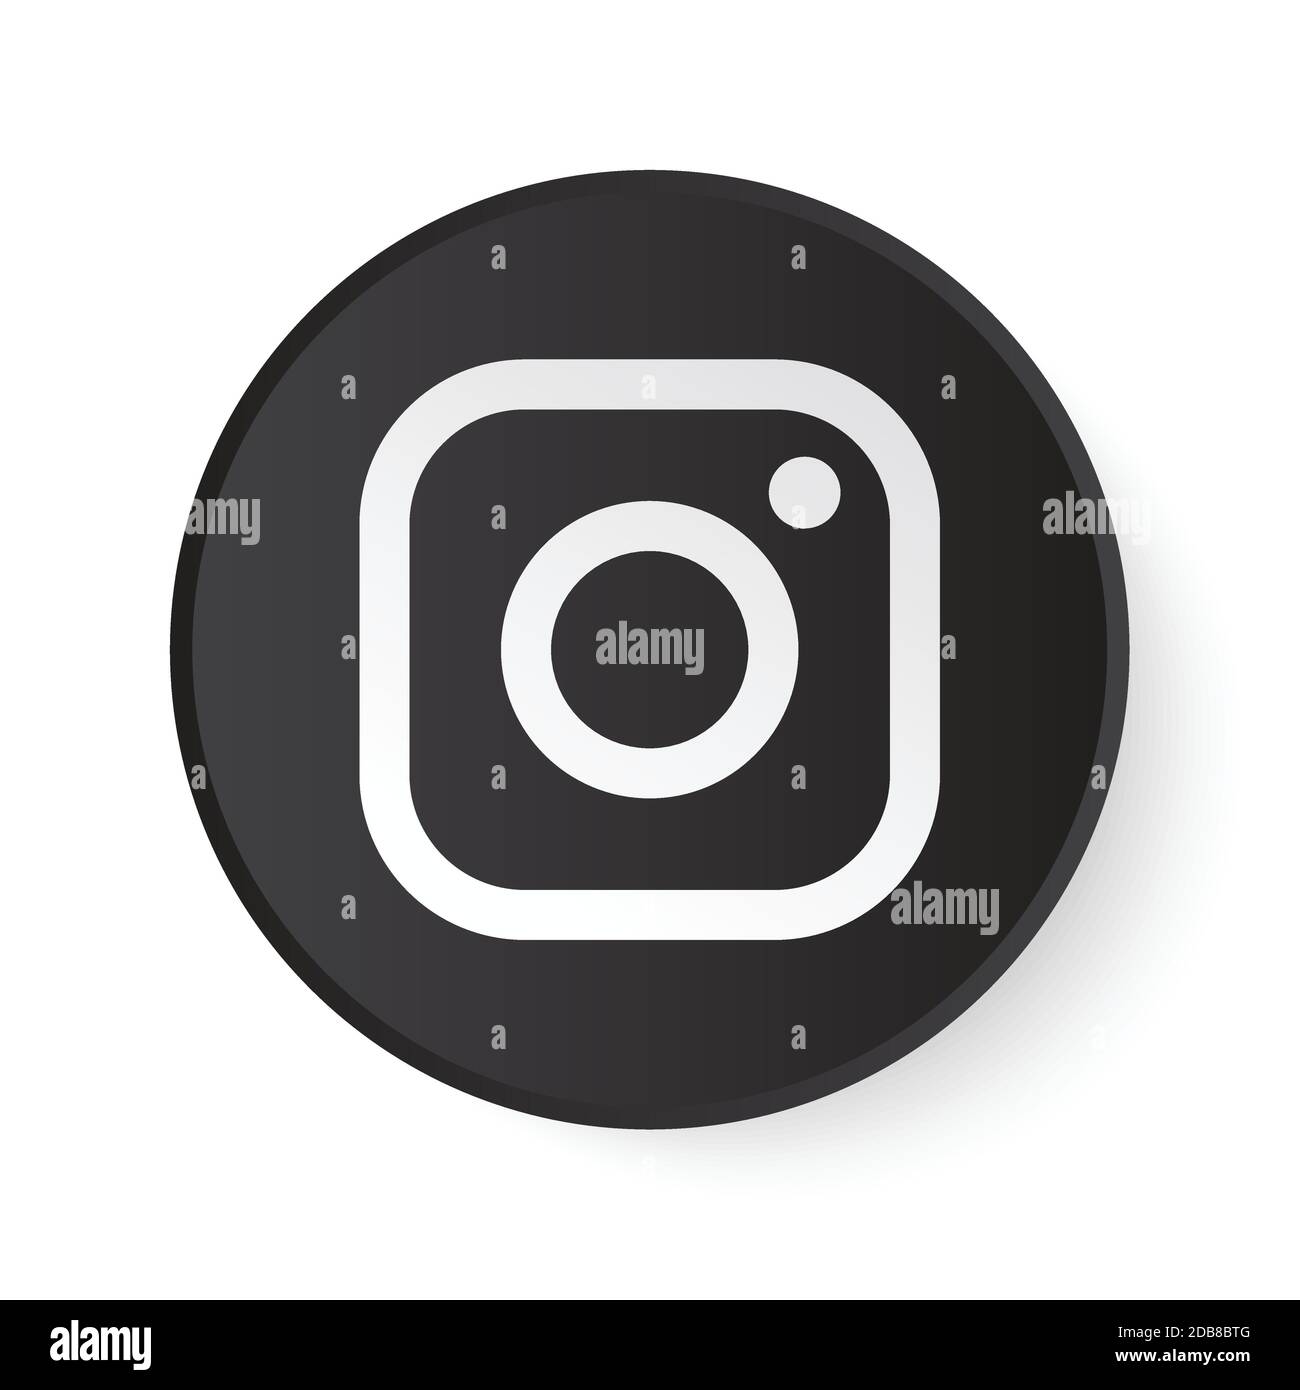 Pulsante nero cerchio Instagram con logo bianco. Icona dei social media con design moderno per sfondo bianco. Modello rotondo 3D con una bella forma Illustrazione Vettoriale